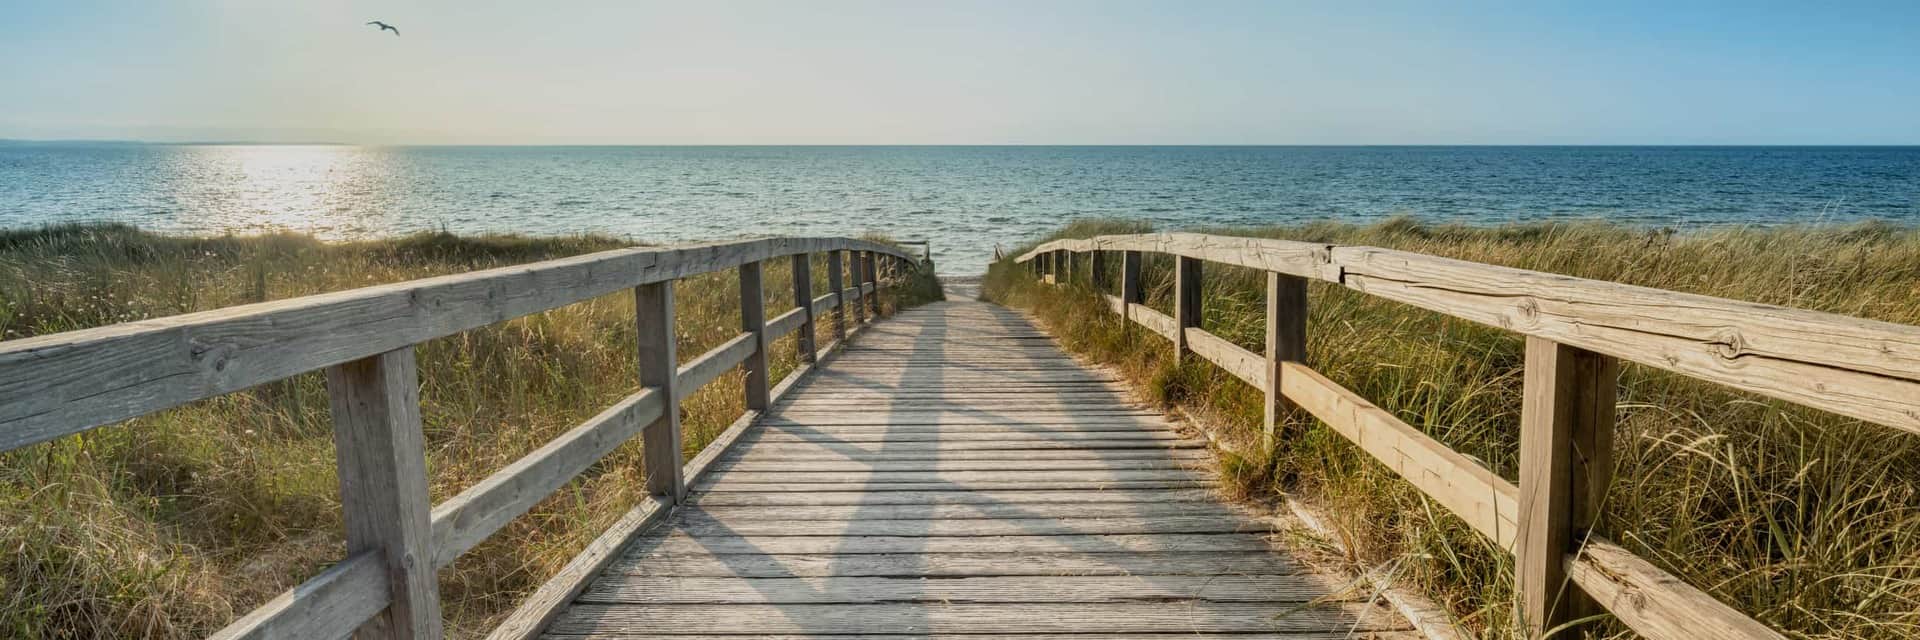 wooden boardwalk leading to beach